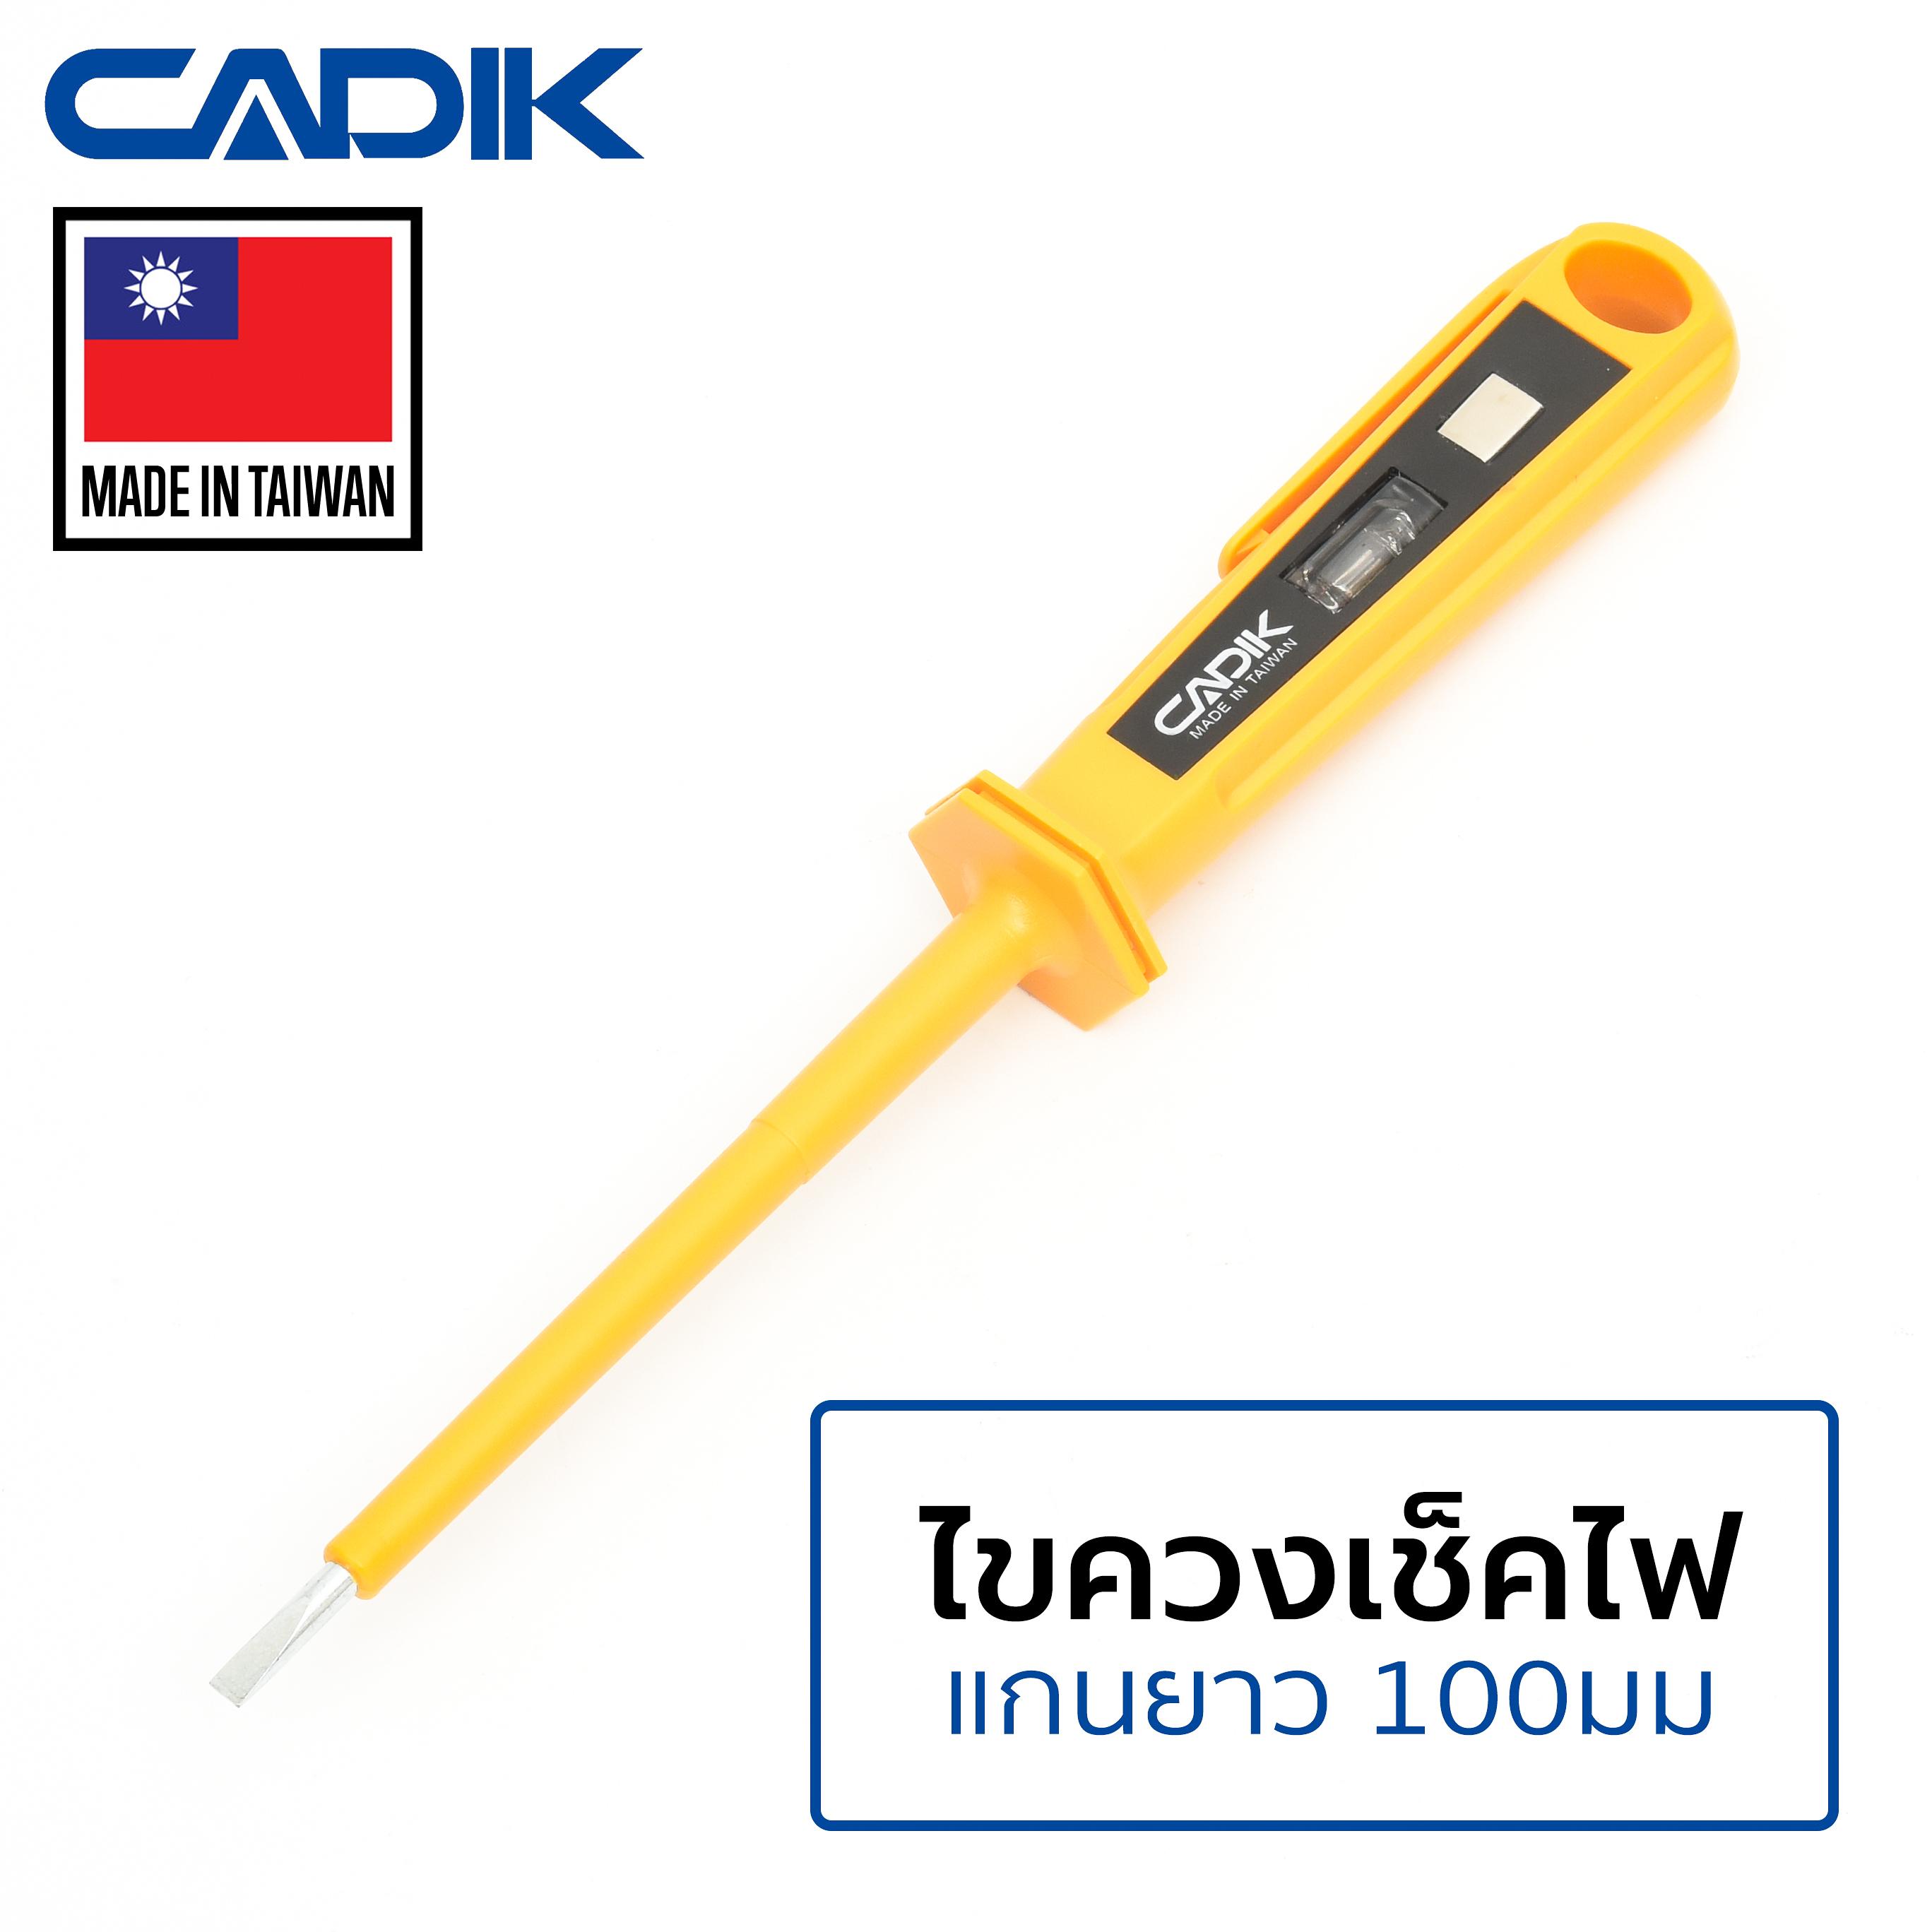 Cadik ไขควงเช็คไฟ แกนยาว 100มม 110-250 โวลต์ ปากแบน ทดสอบไฟ ไขควงวัดไฟ รุ่น TP-03